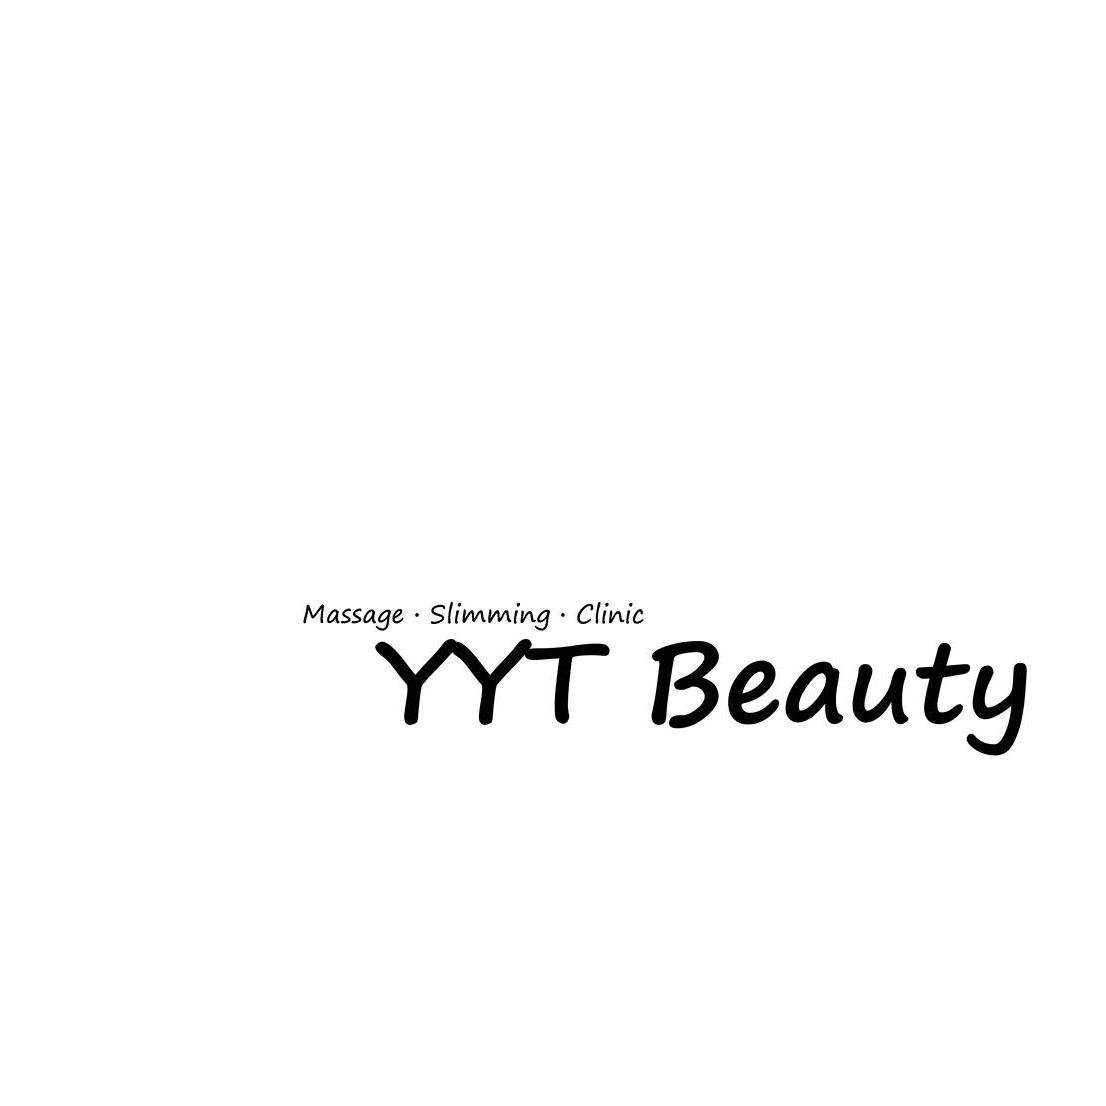 修眉/眼睫毛: YYT Beauty (旺角)